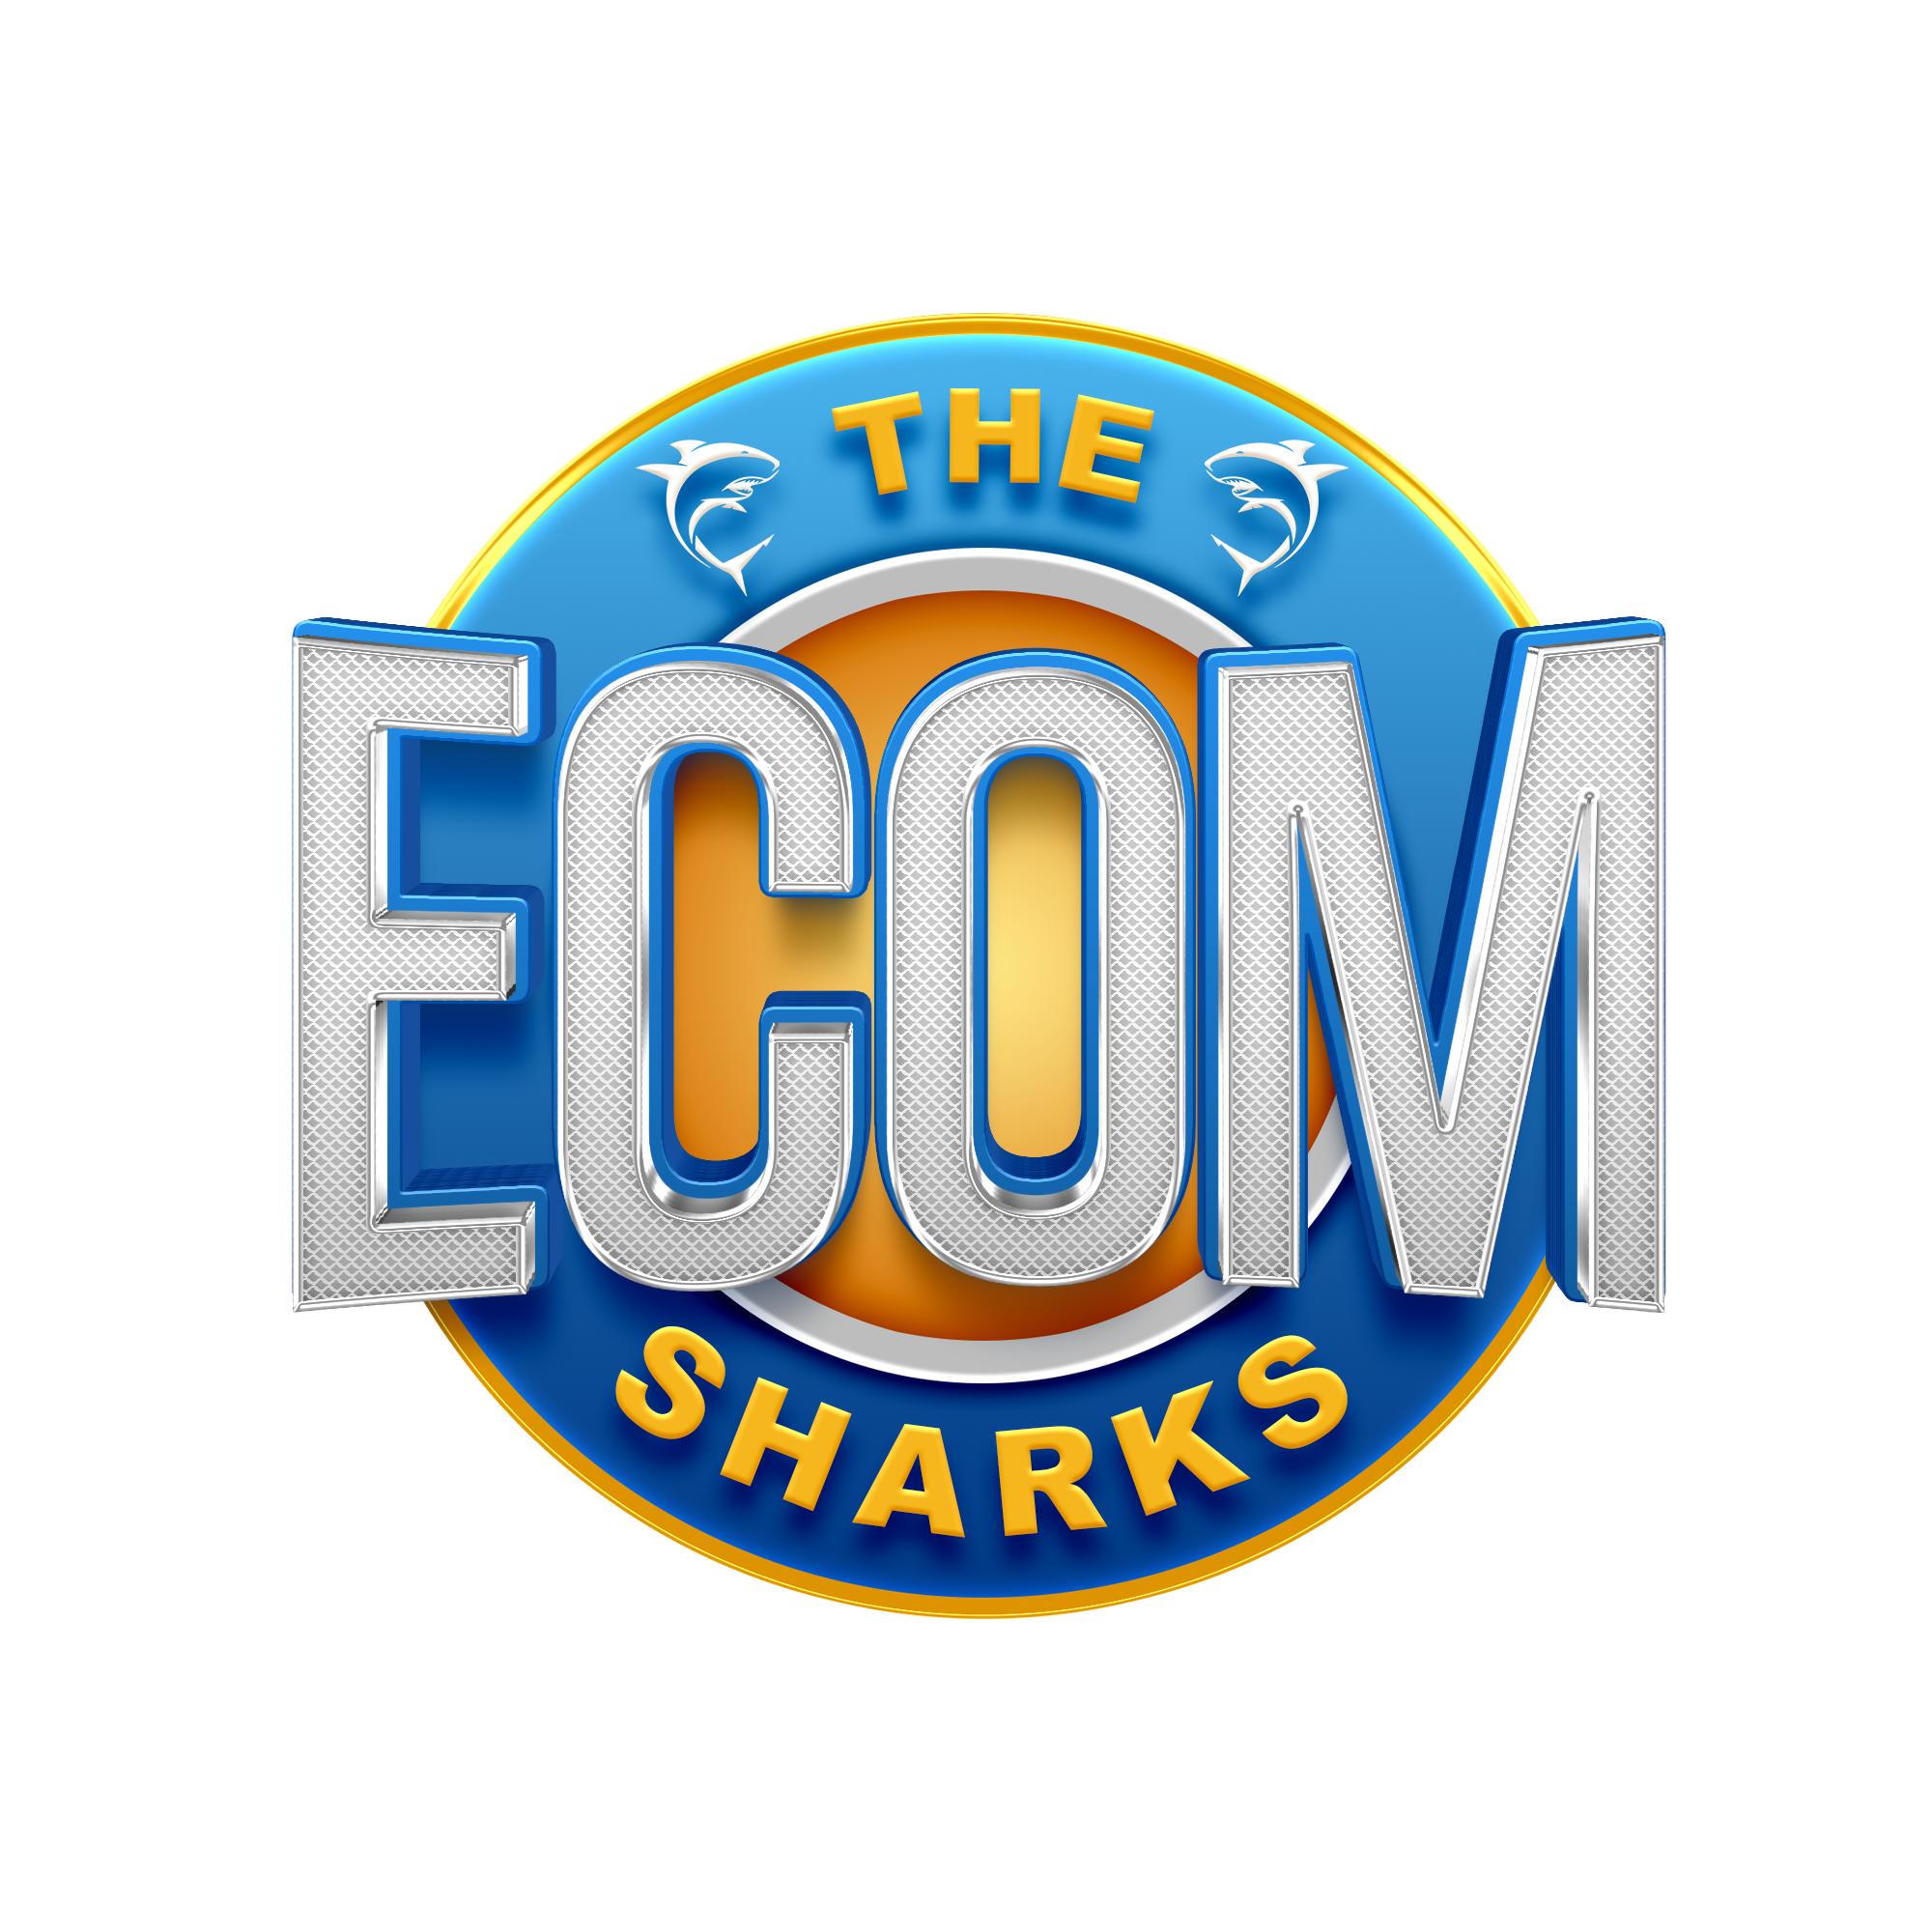 The ecom Sharks